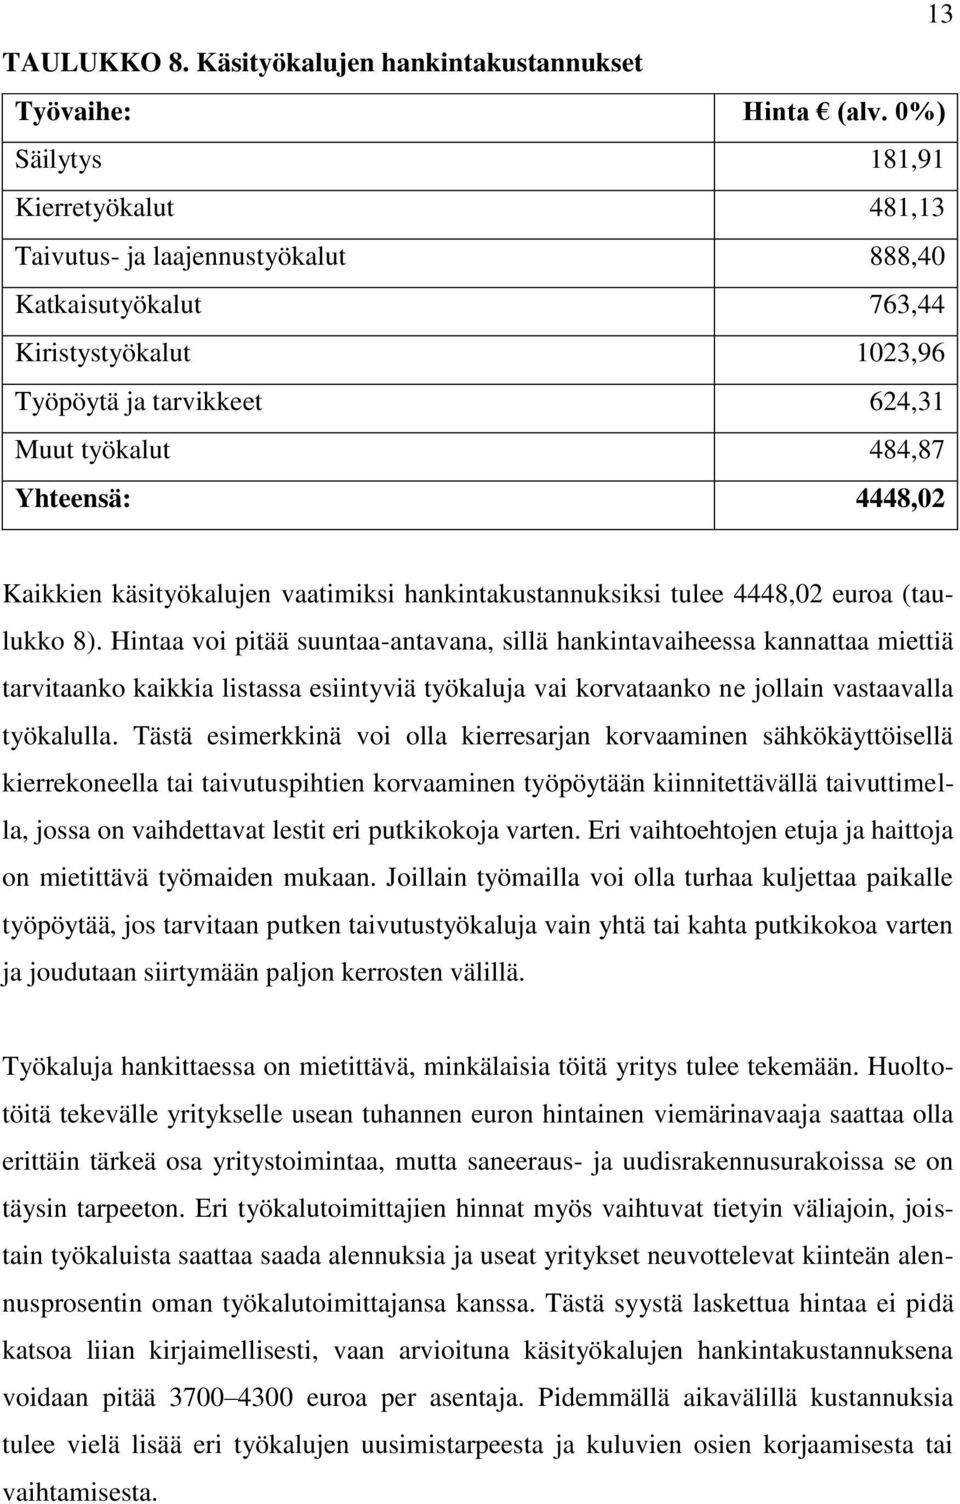 Kaikkien käsityökalujen vaatimiksi hankintakustannuksiksi tulee 4448,02 euroa (taulukko 8).